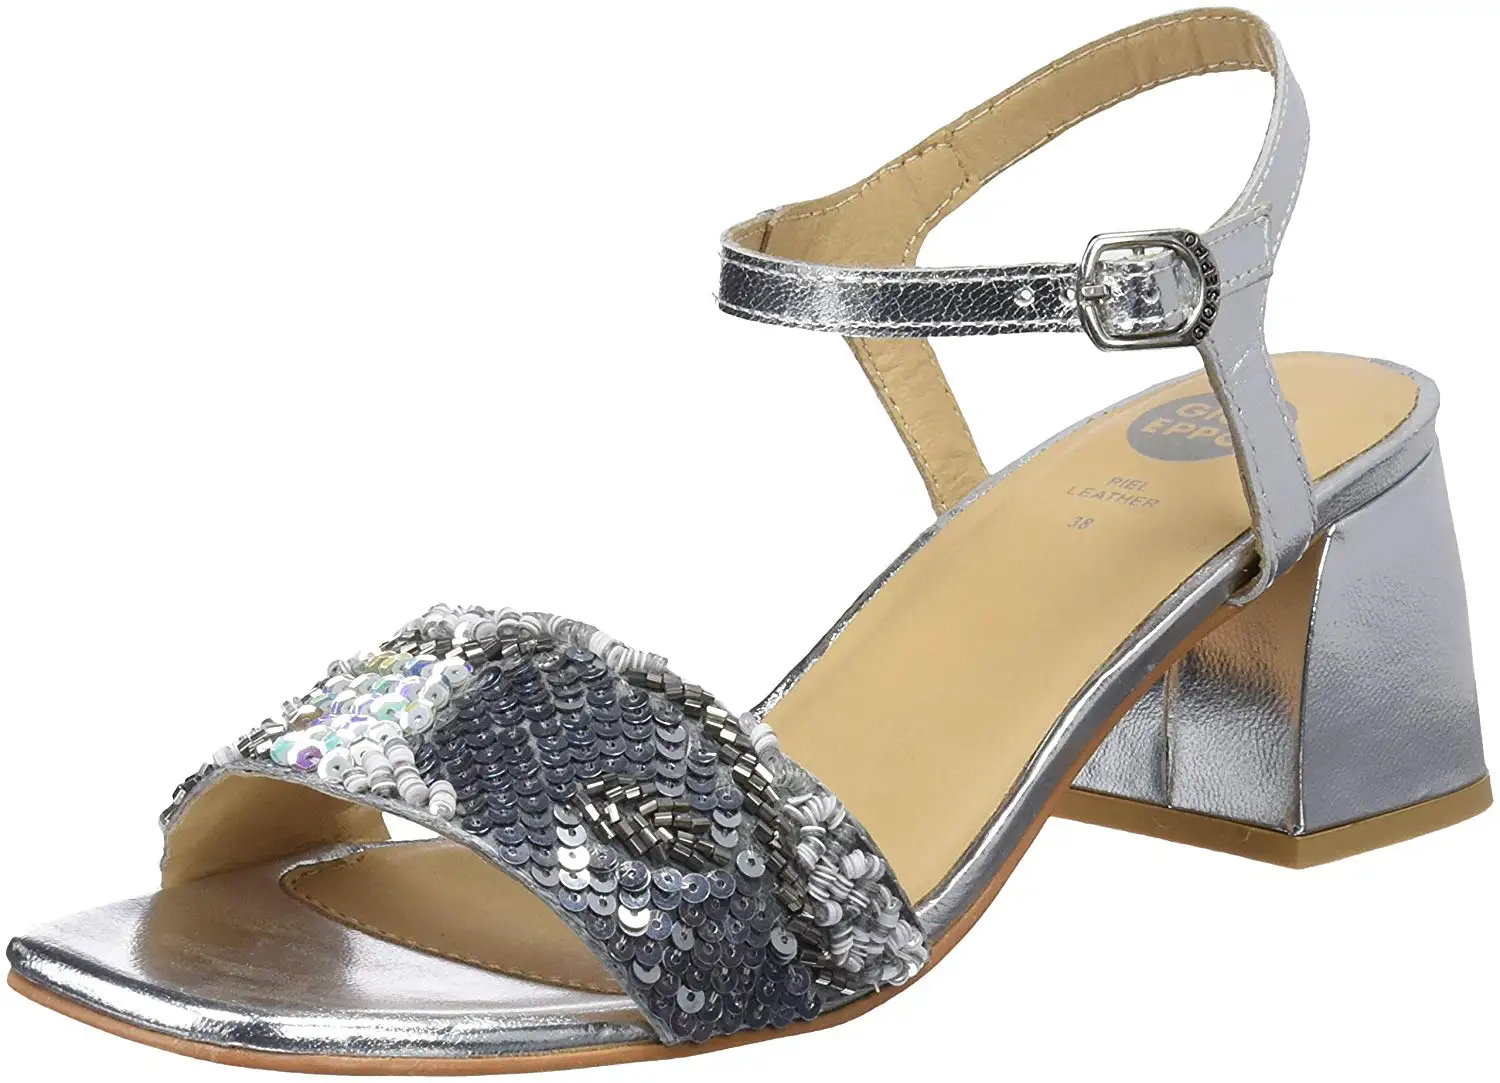 Buy > womens silver sandals low heel > in stock